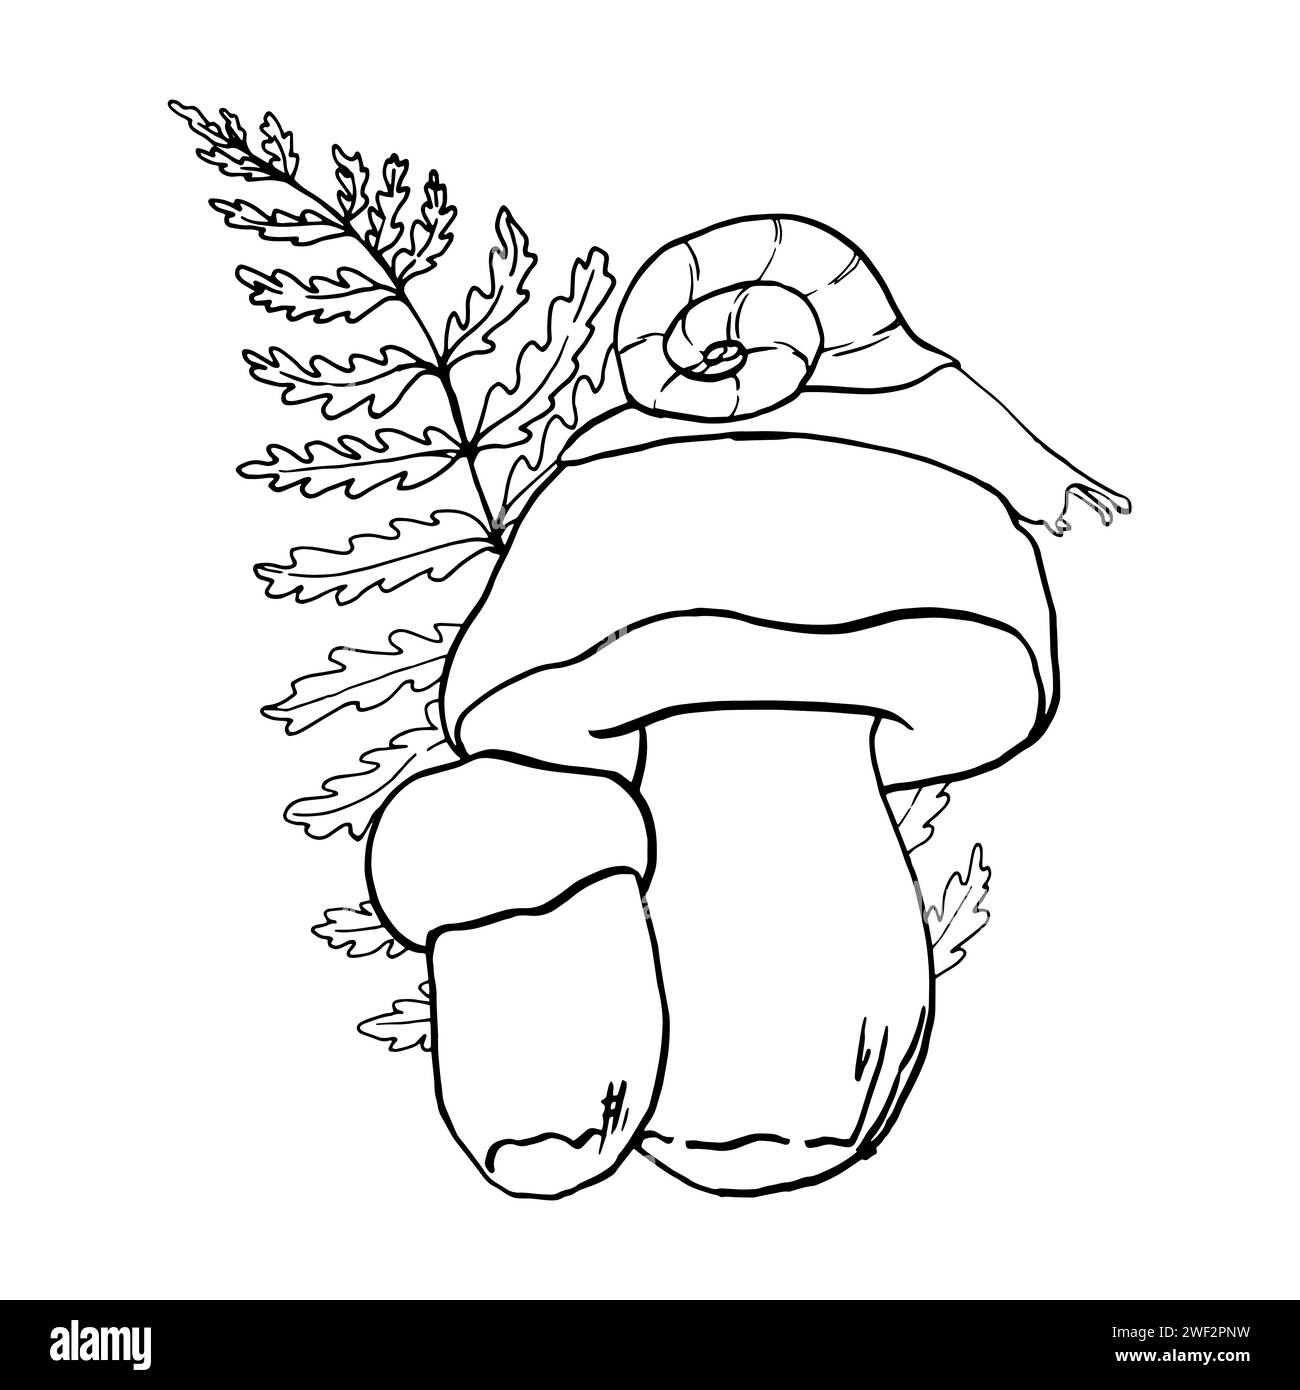 Vector Black Line contour illustration champignon et feuille de chêne dessinés à la main, famille de champignons comestibles. Clip art simple à motif porcini plat pour le d Illustration de Vecteur